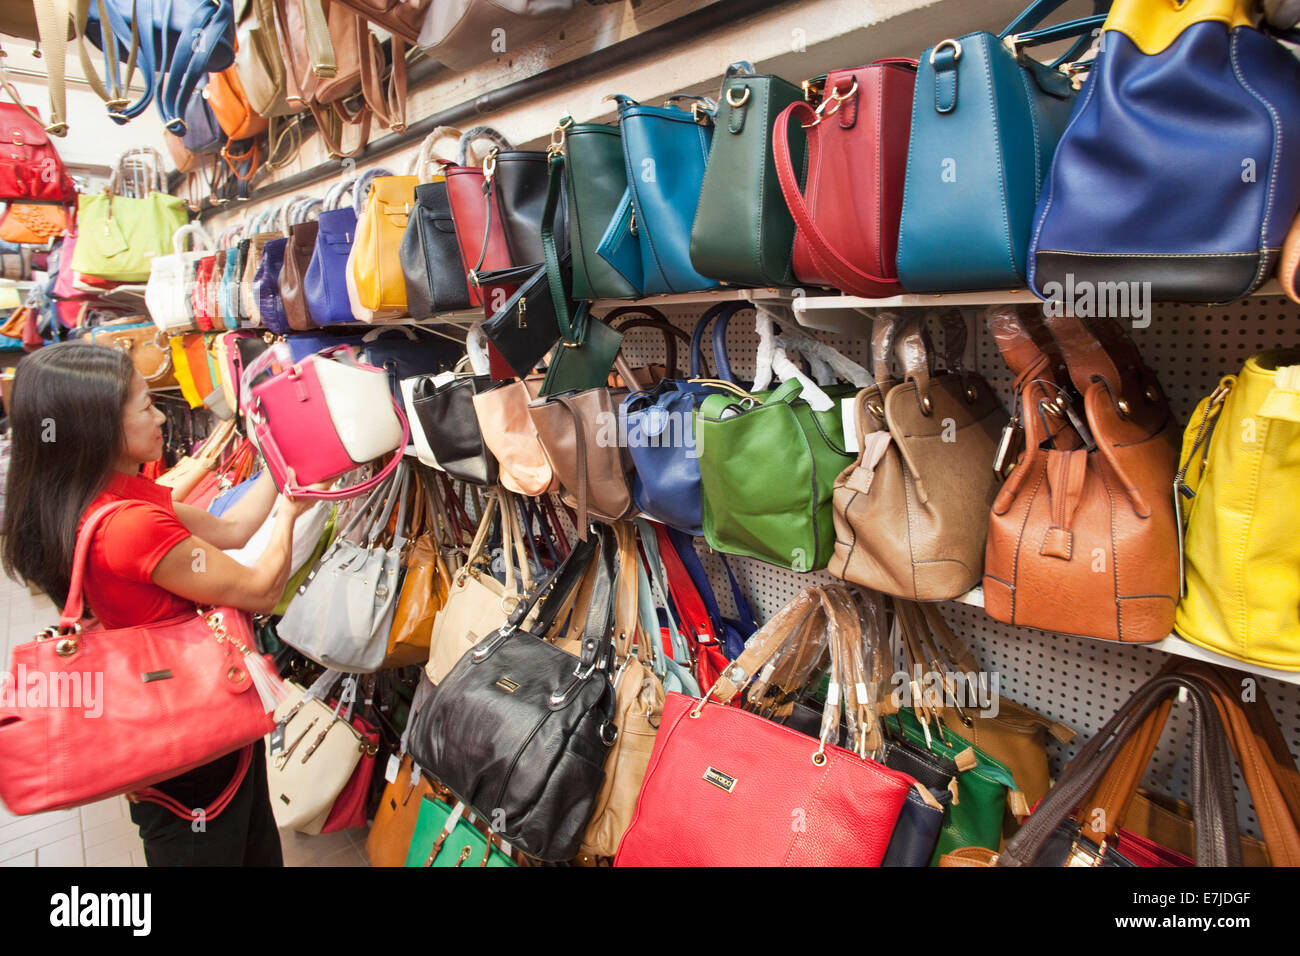 China, Hong Kong, Stanley Market, Shop Display of Fake Purses and Handbags  Stock Photo - Alamy